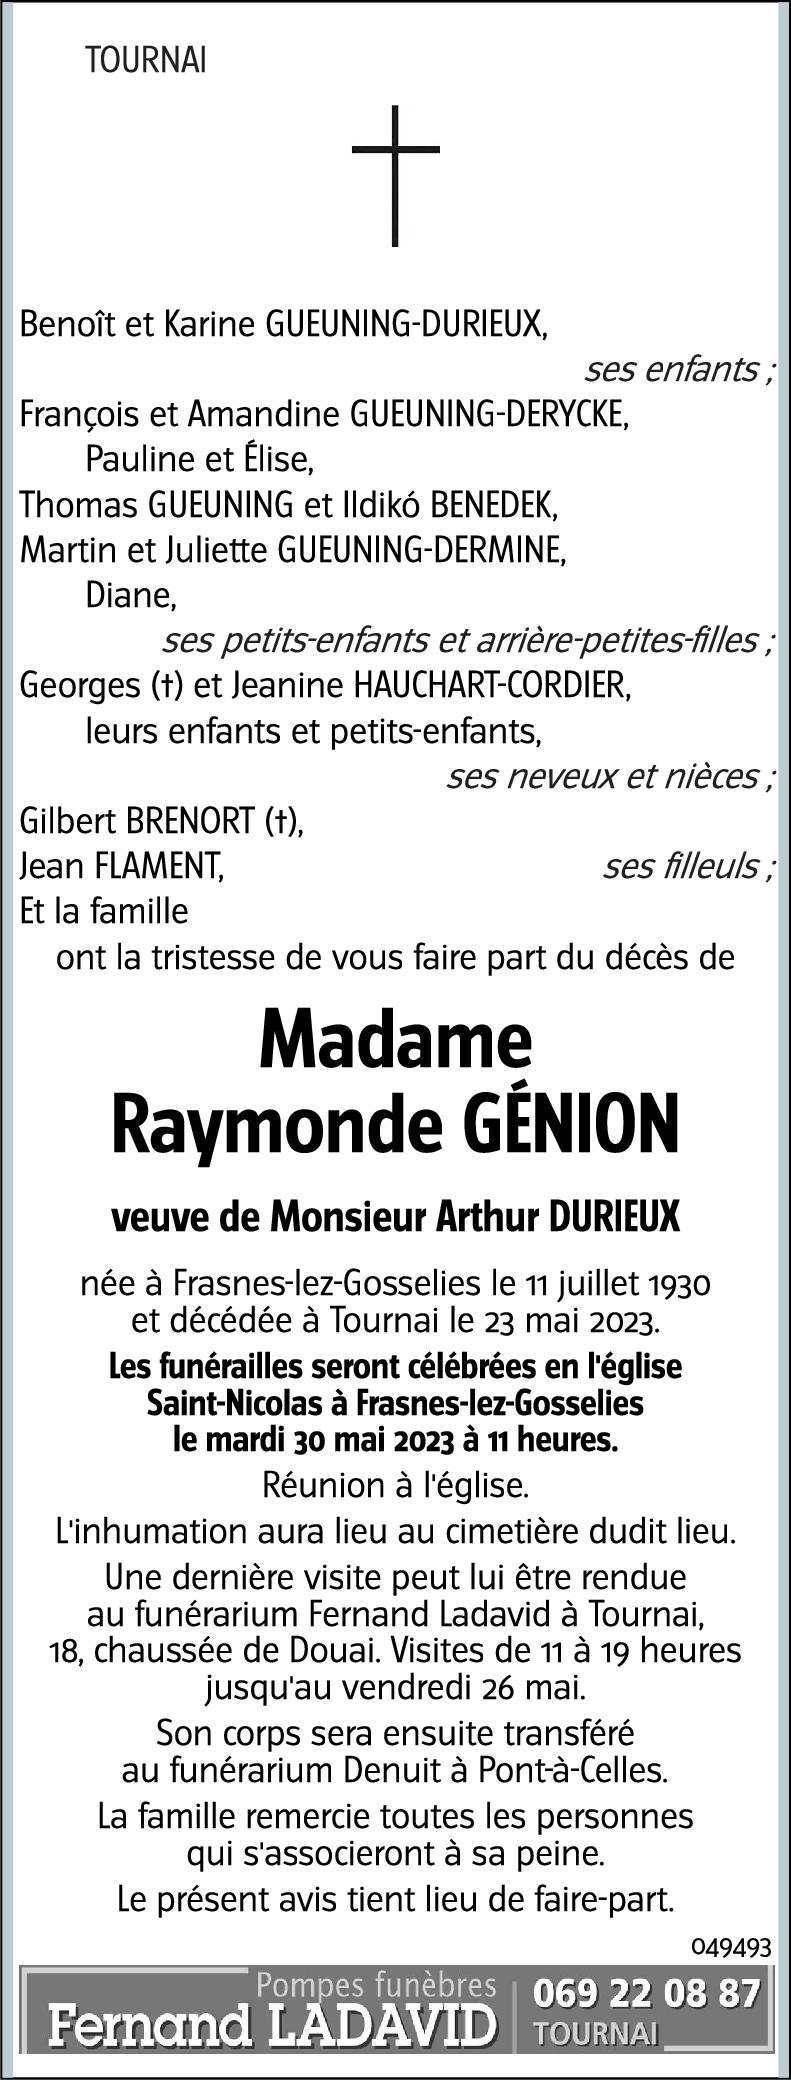 Raymonde GÉNION